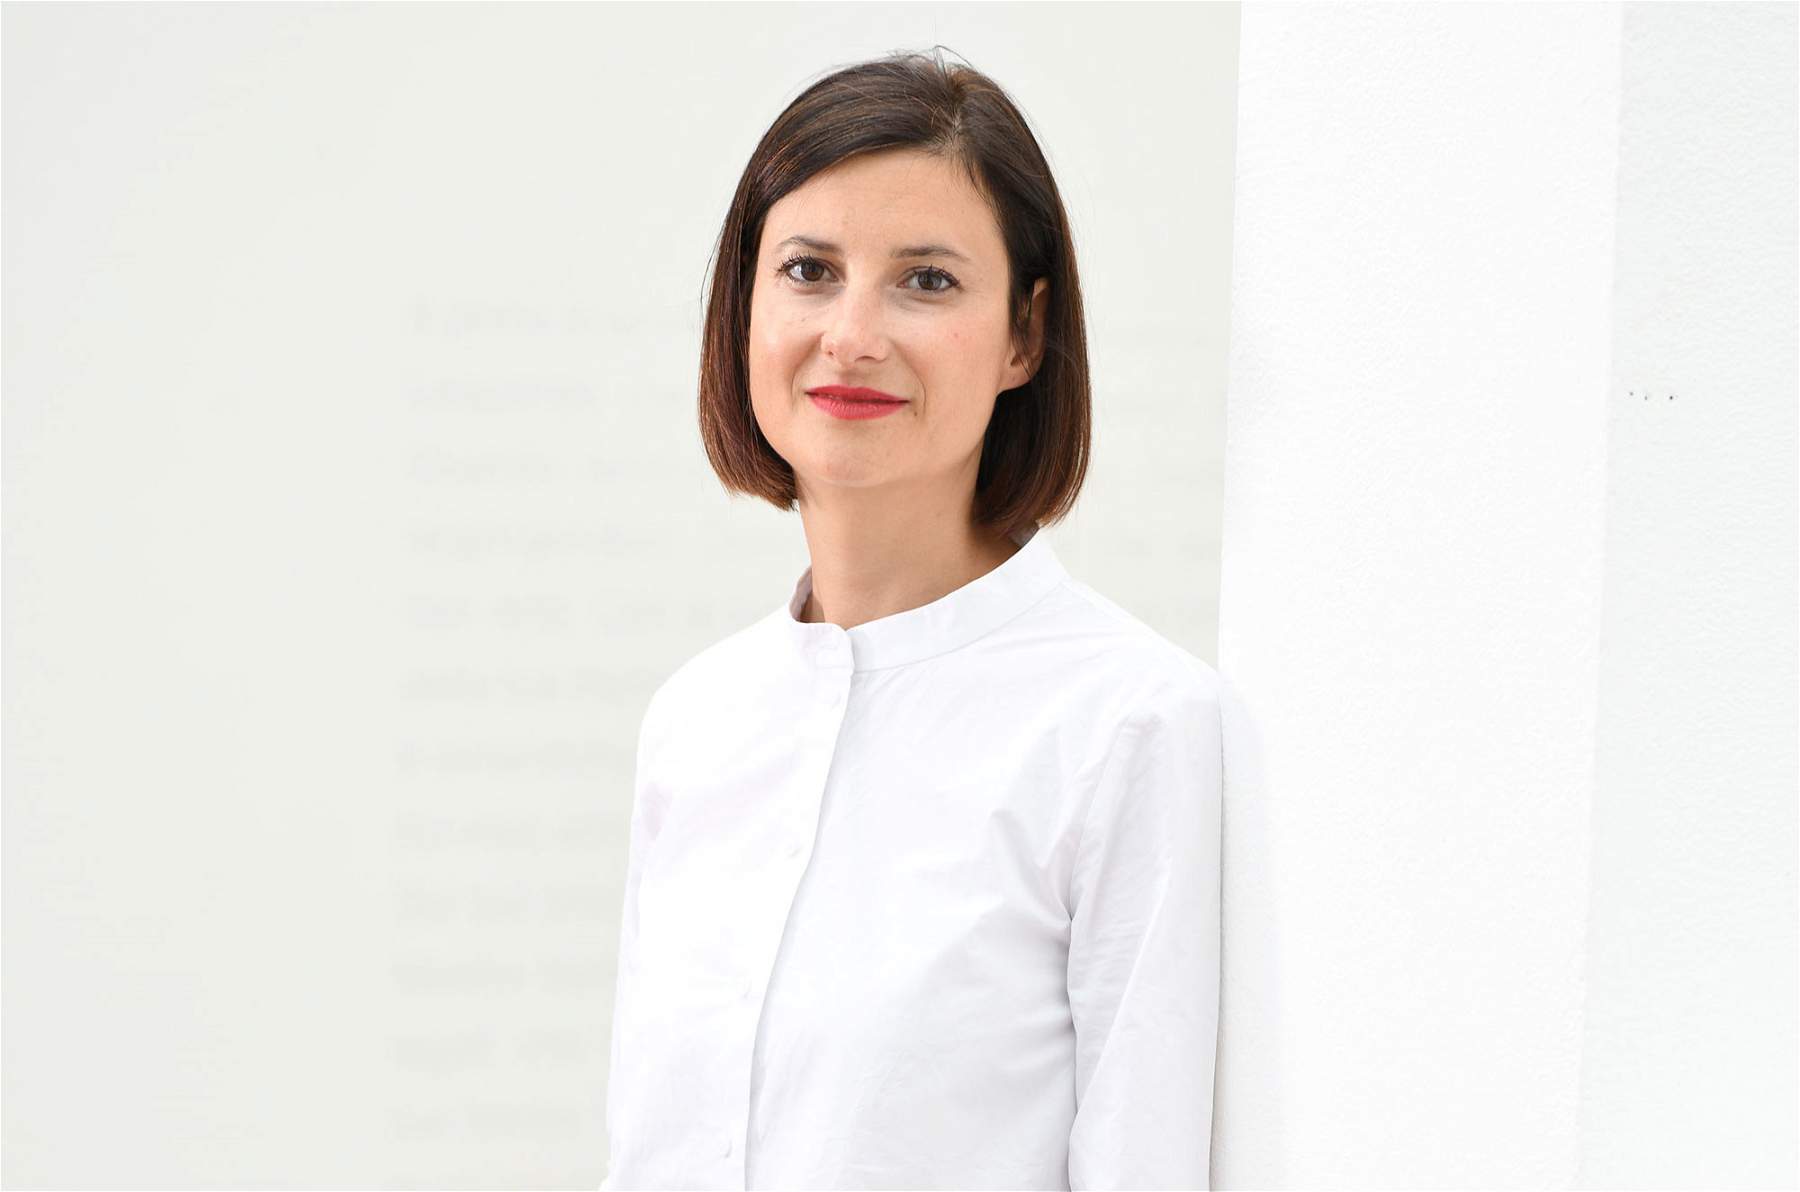 La Kunsthaus di Merano ha una nuova, giovane direttrice: è Martina Oberprantacher